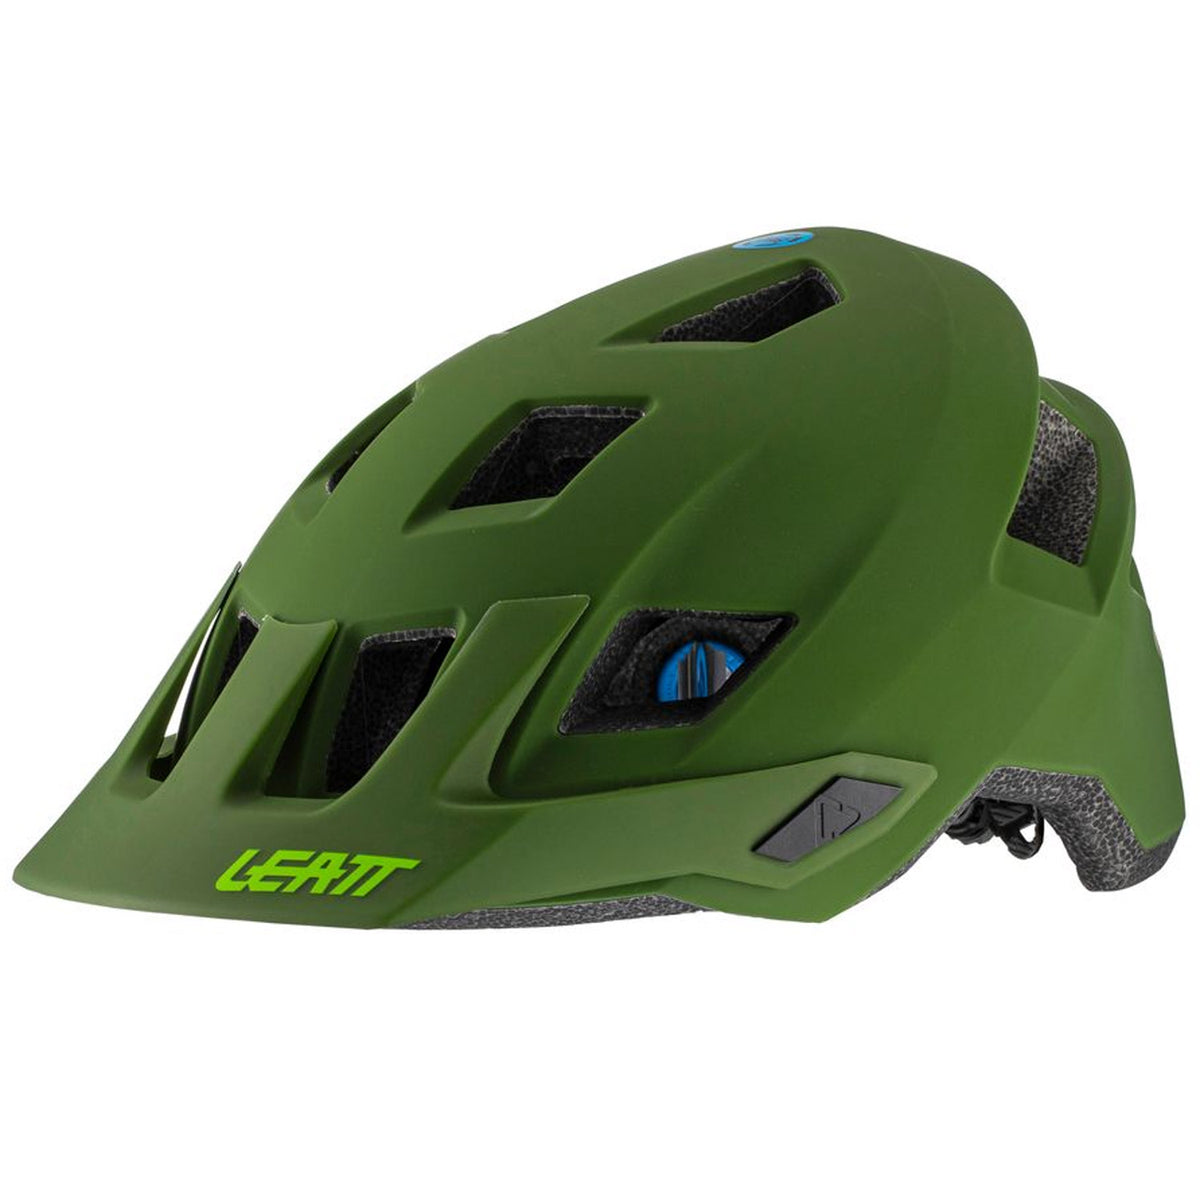 Savant Continu Afwijzen Leatt MTB 1.0 MTN Helmet - Green | All4cycling